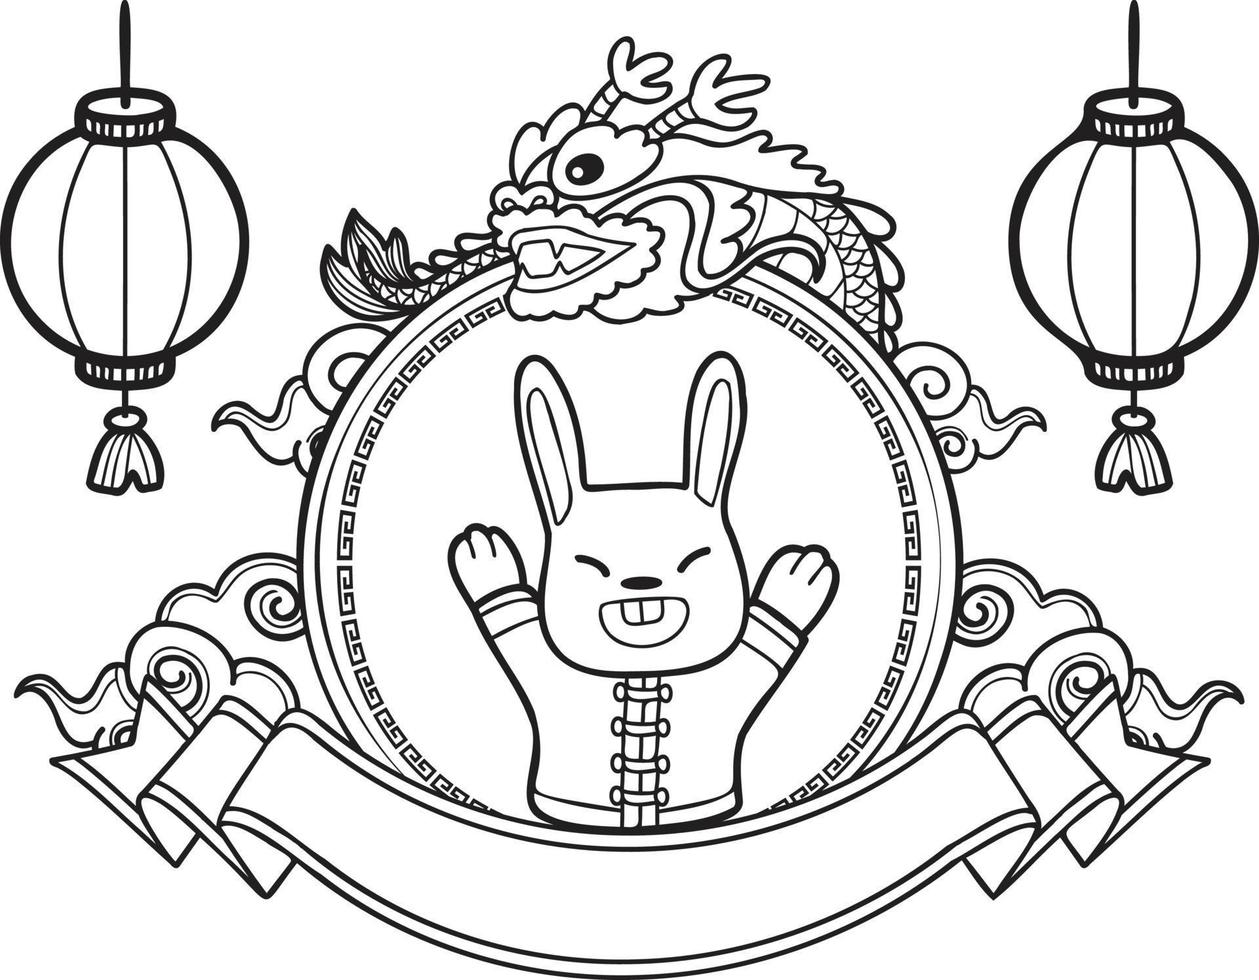 ano novo chinês desenhado à mão com ilustração de coelho vetor